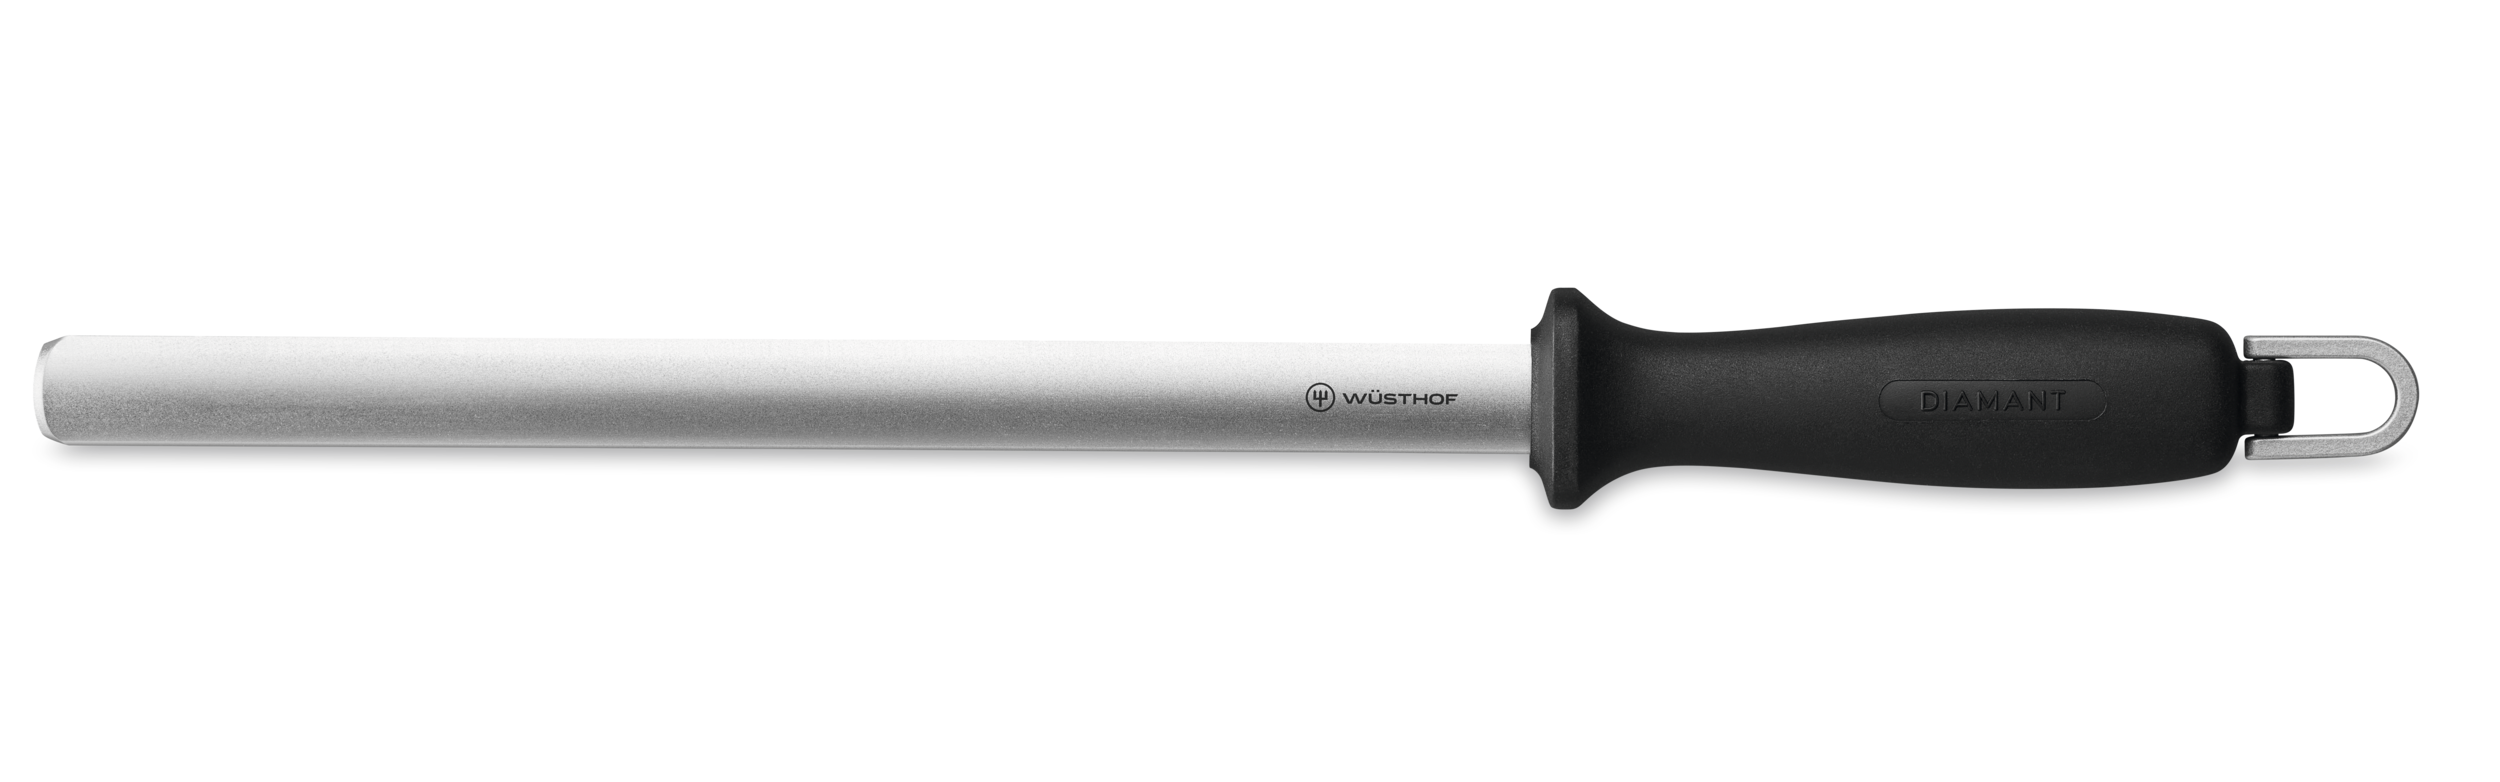 Diamond Knife Sharpener 26 cm  10 inch - WÜSTHOF - Official Online Store